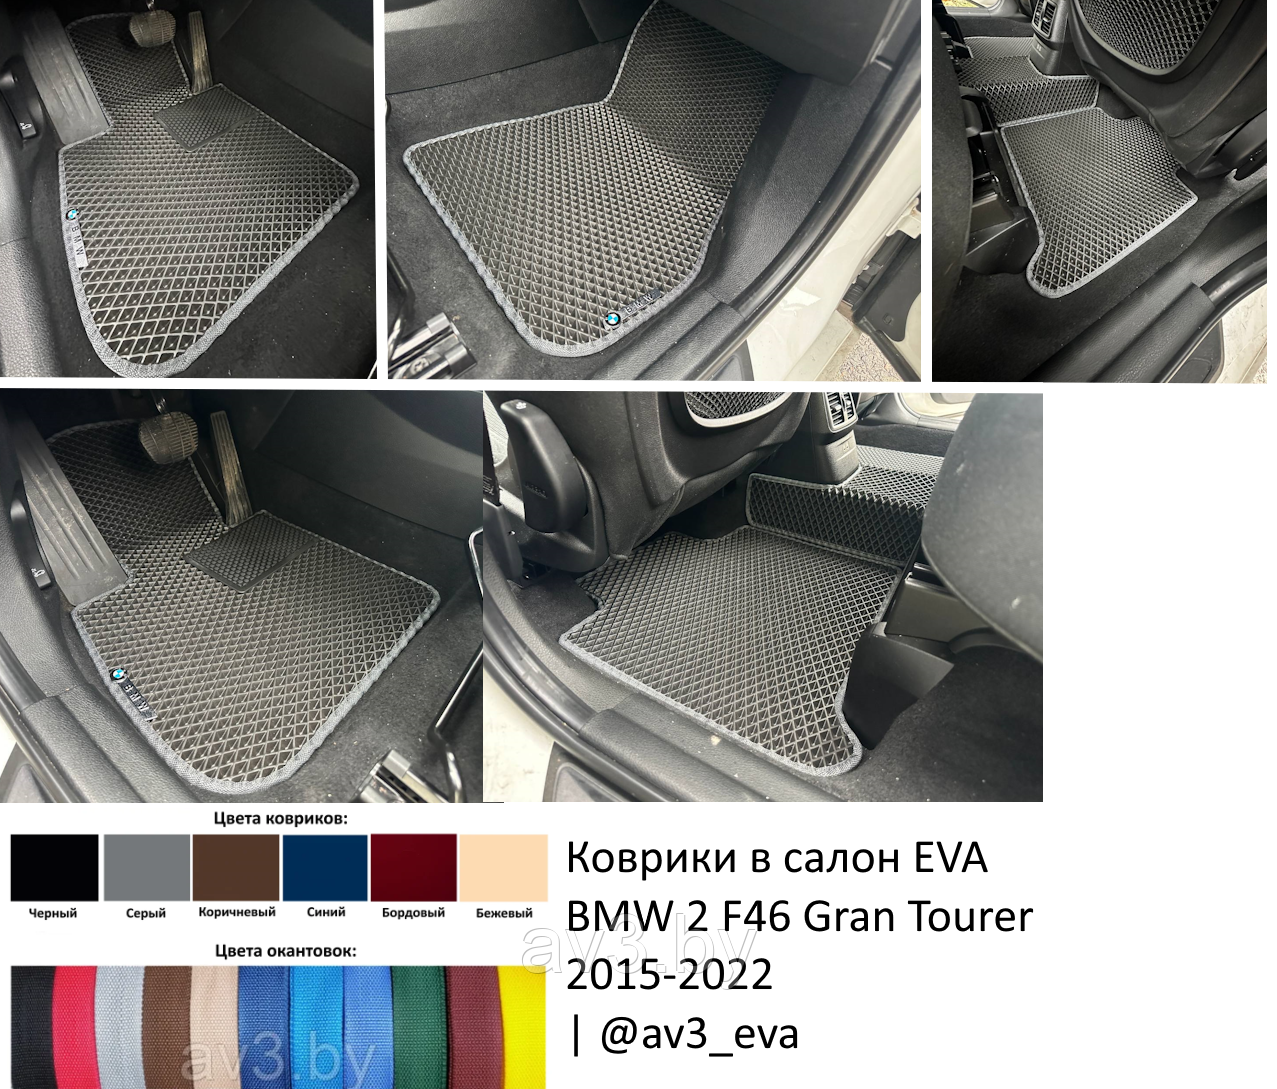 Коврики в салон EVA BMW 2 F46 Gran Tourer 2015-2022 | @av3_eva